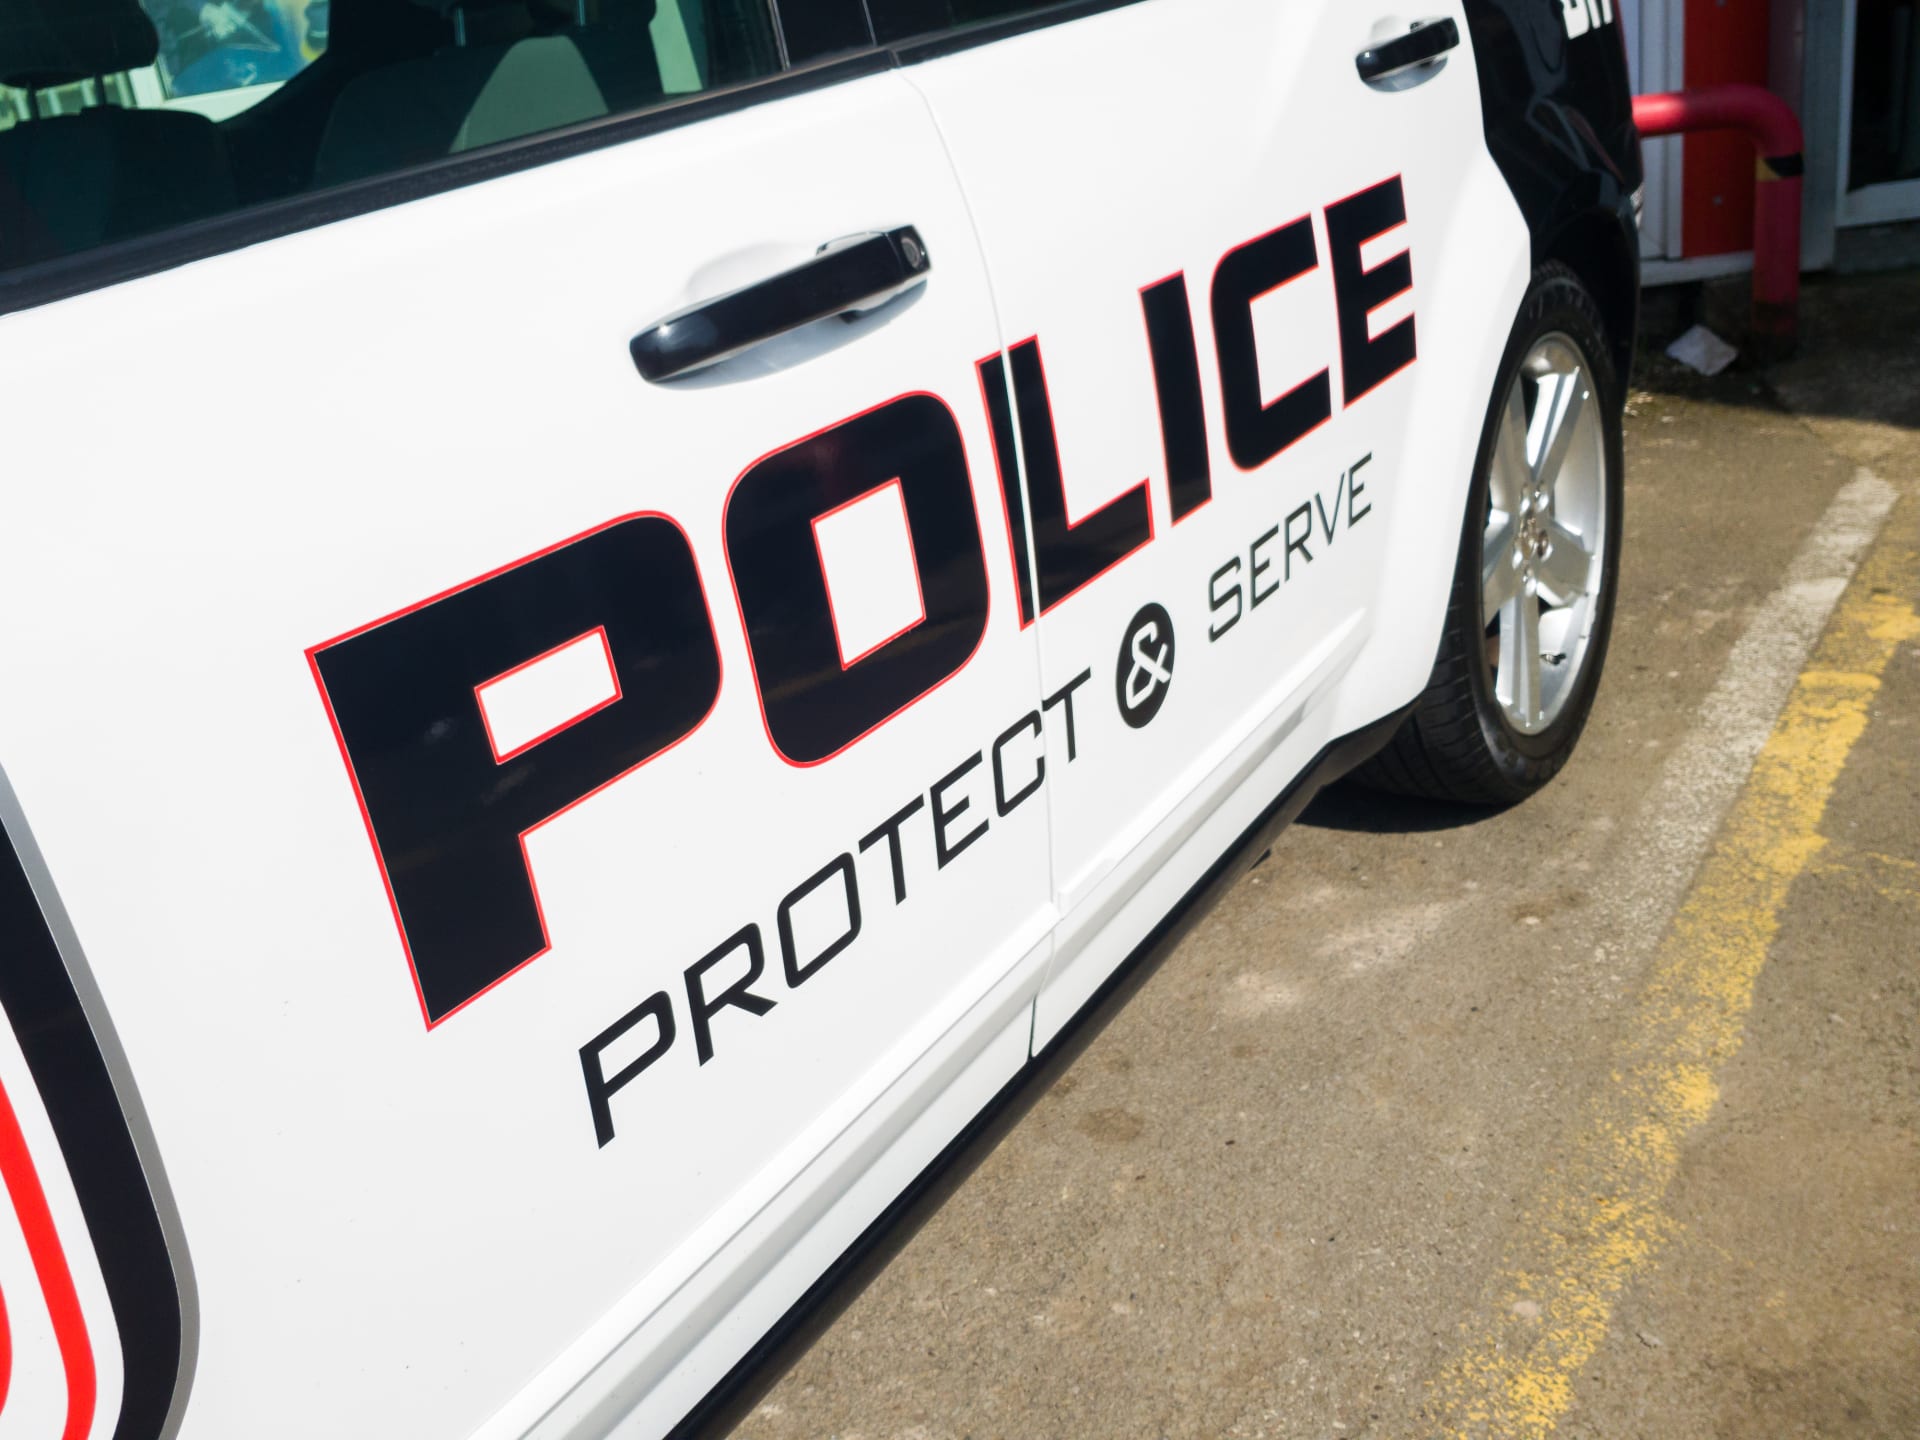 Policejní motto „Pomáhat a chránit“, v americe „Chránit a sloužit“, dostalo na Floridě díky dvěma strážcům zákona nový rozměr. (Ilustrační snímek)